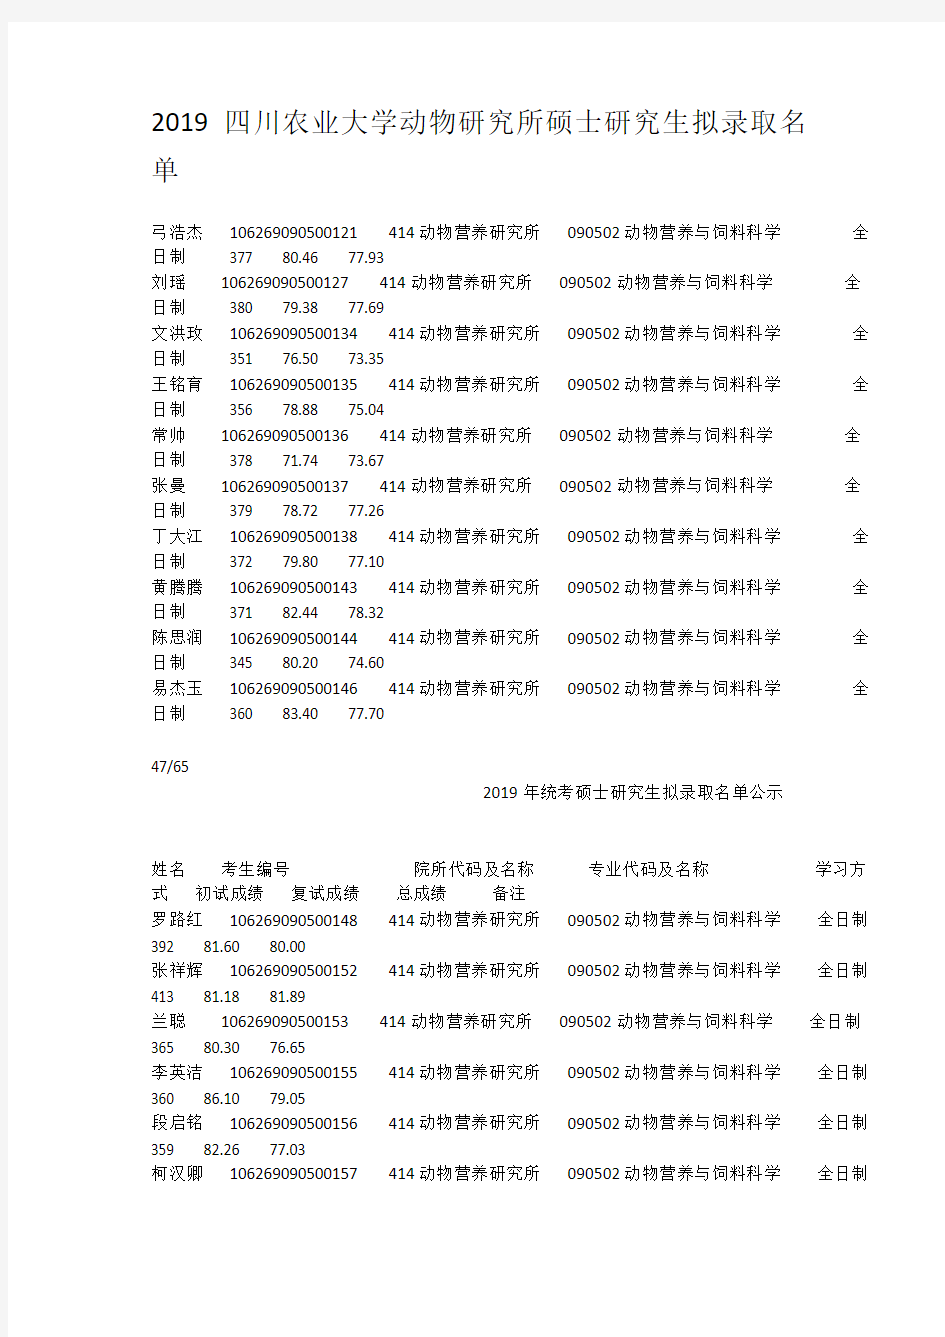 2019四川农业大学动物研究所硕士研究生拟录取名单